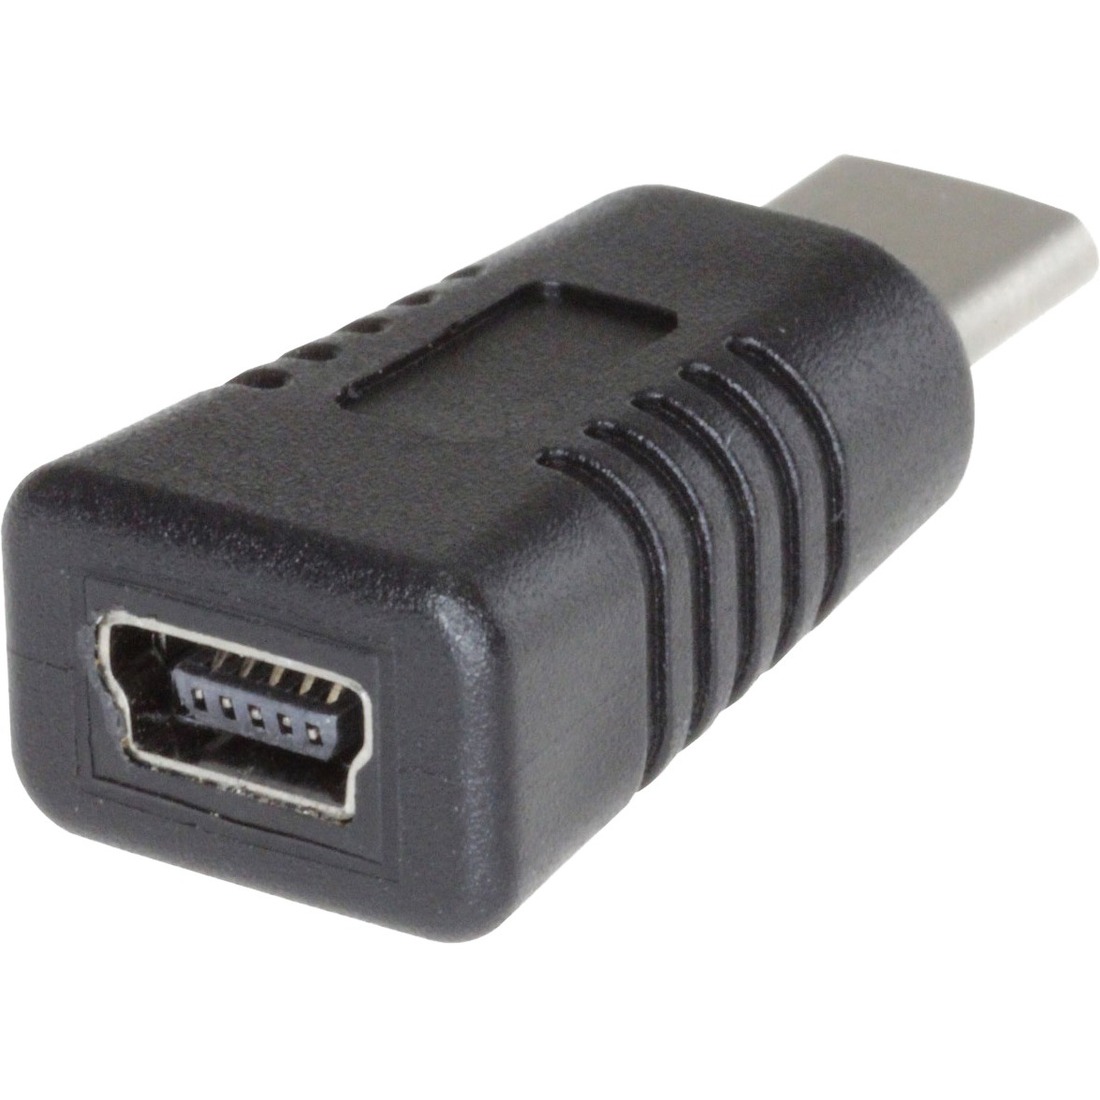 komen tornado Statistisch 4XEM USB-C to Mini USB 2.0 Type-B Adaptor - 1 x Type C Male USB - 1 x Type B  Female Mini USB - Black - Newegg.com